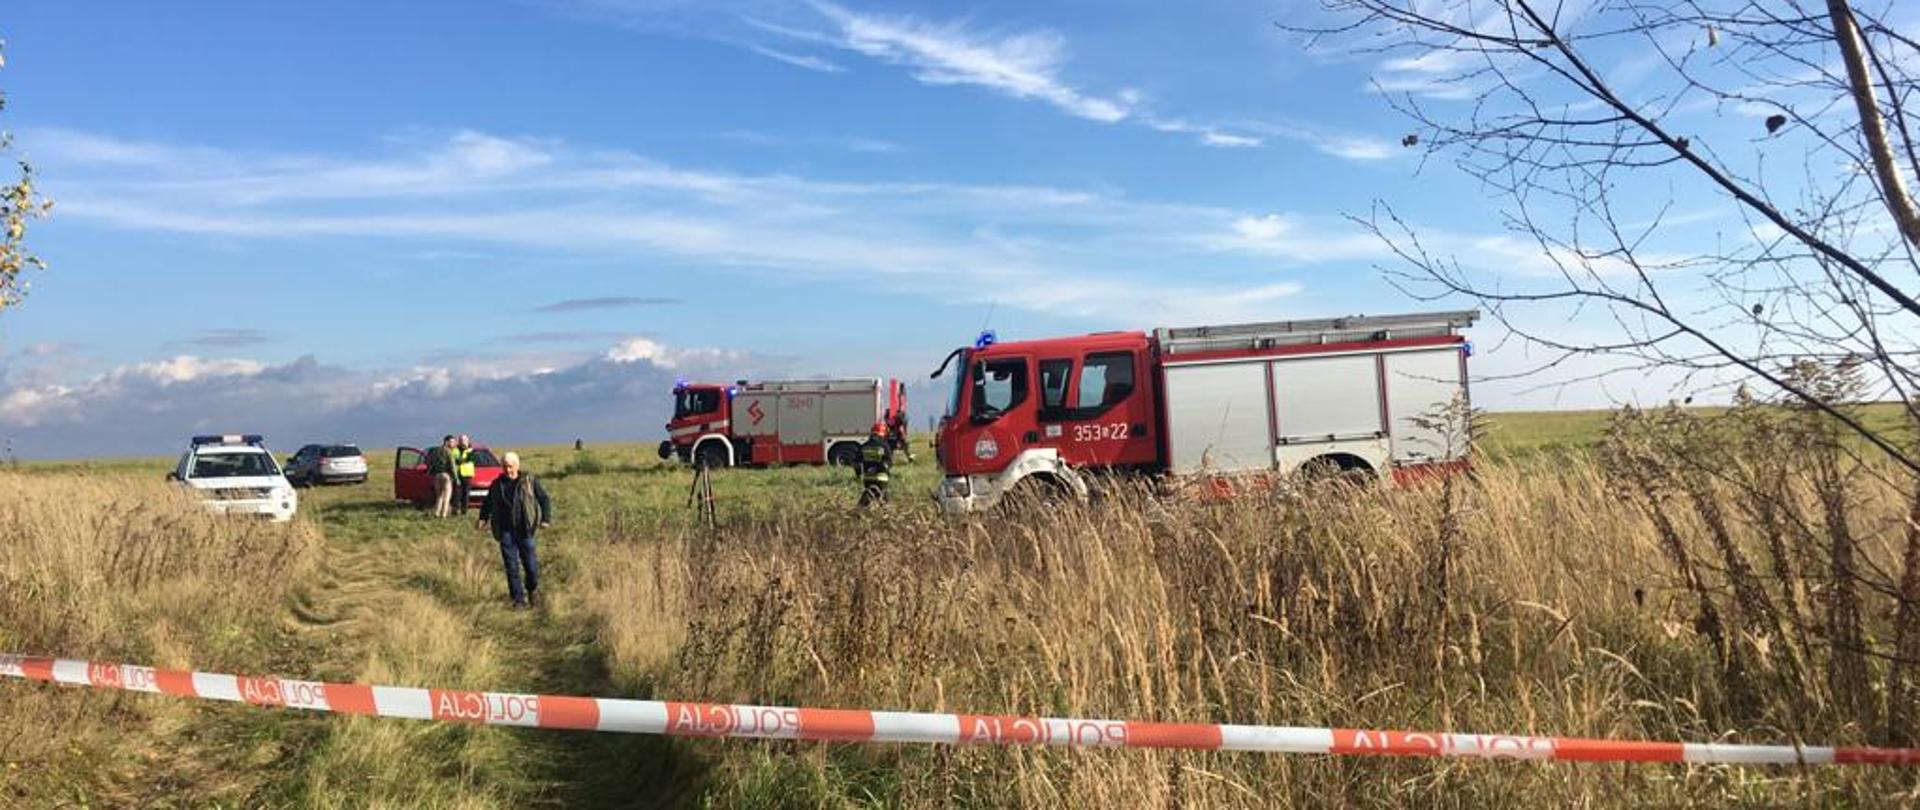 Wypadek lotniczy w miejscowości Rudniki